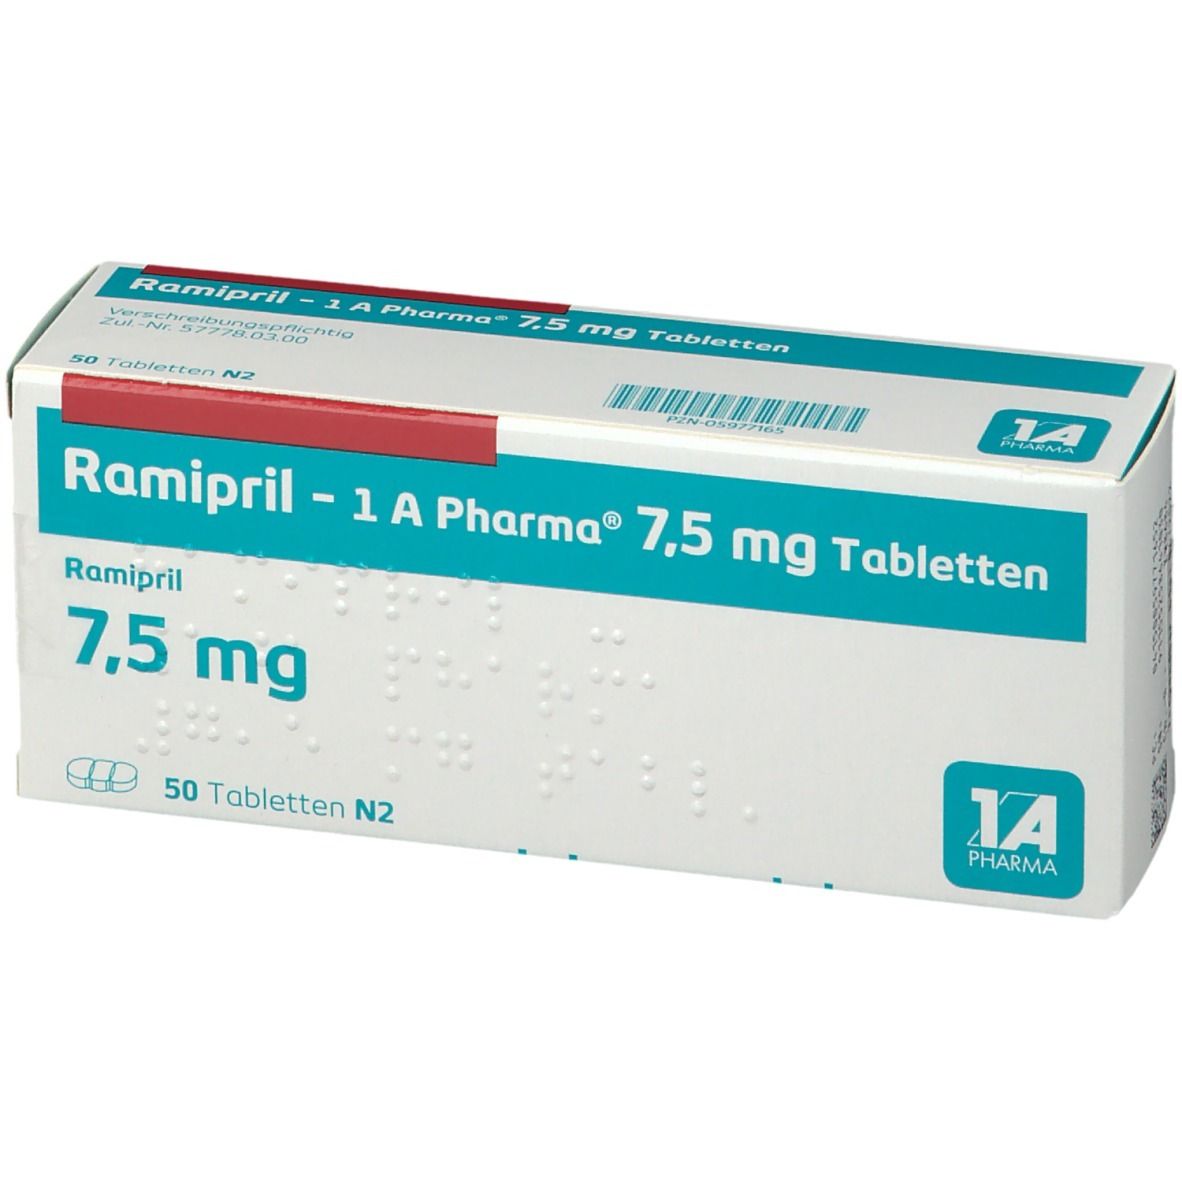 Ramipril - 1 A Pharma® 7,5 mg